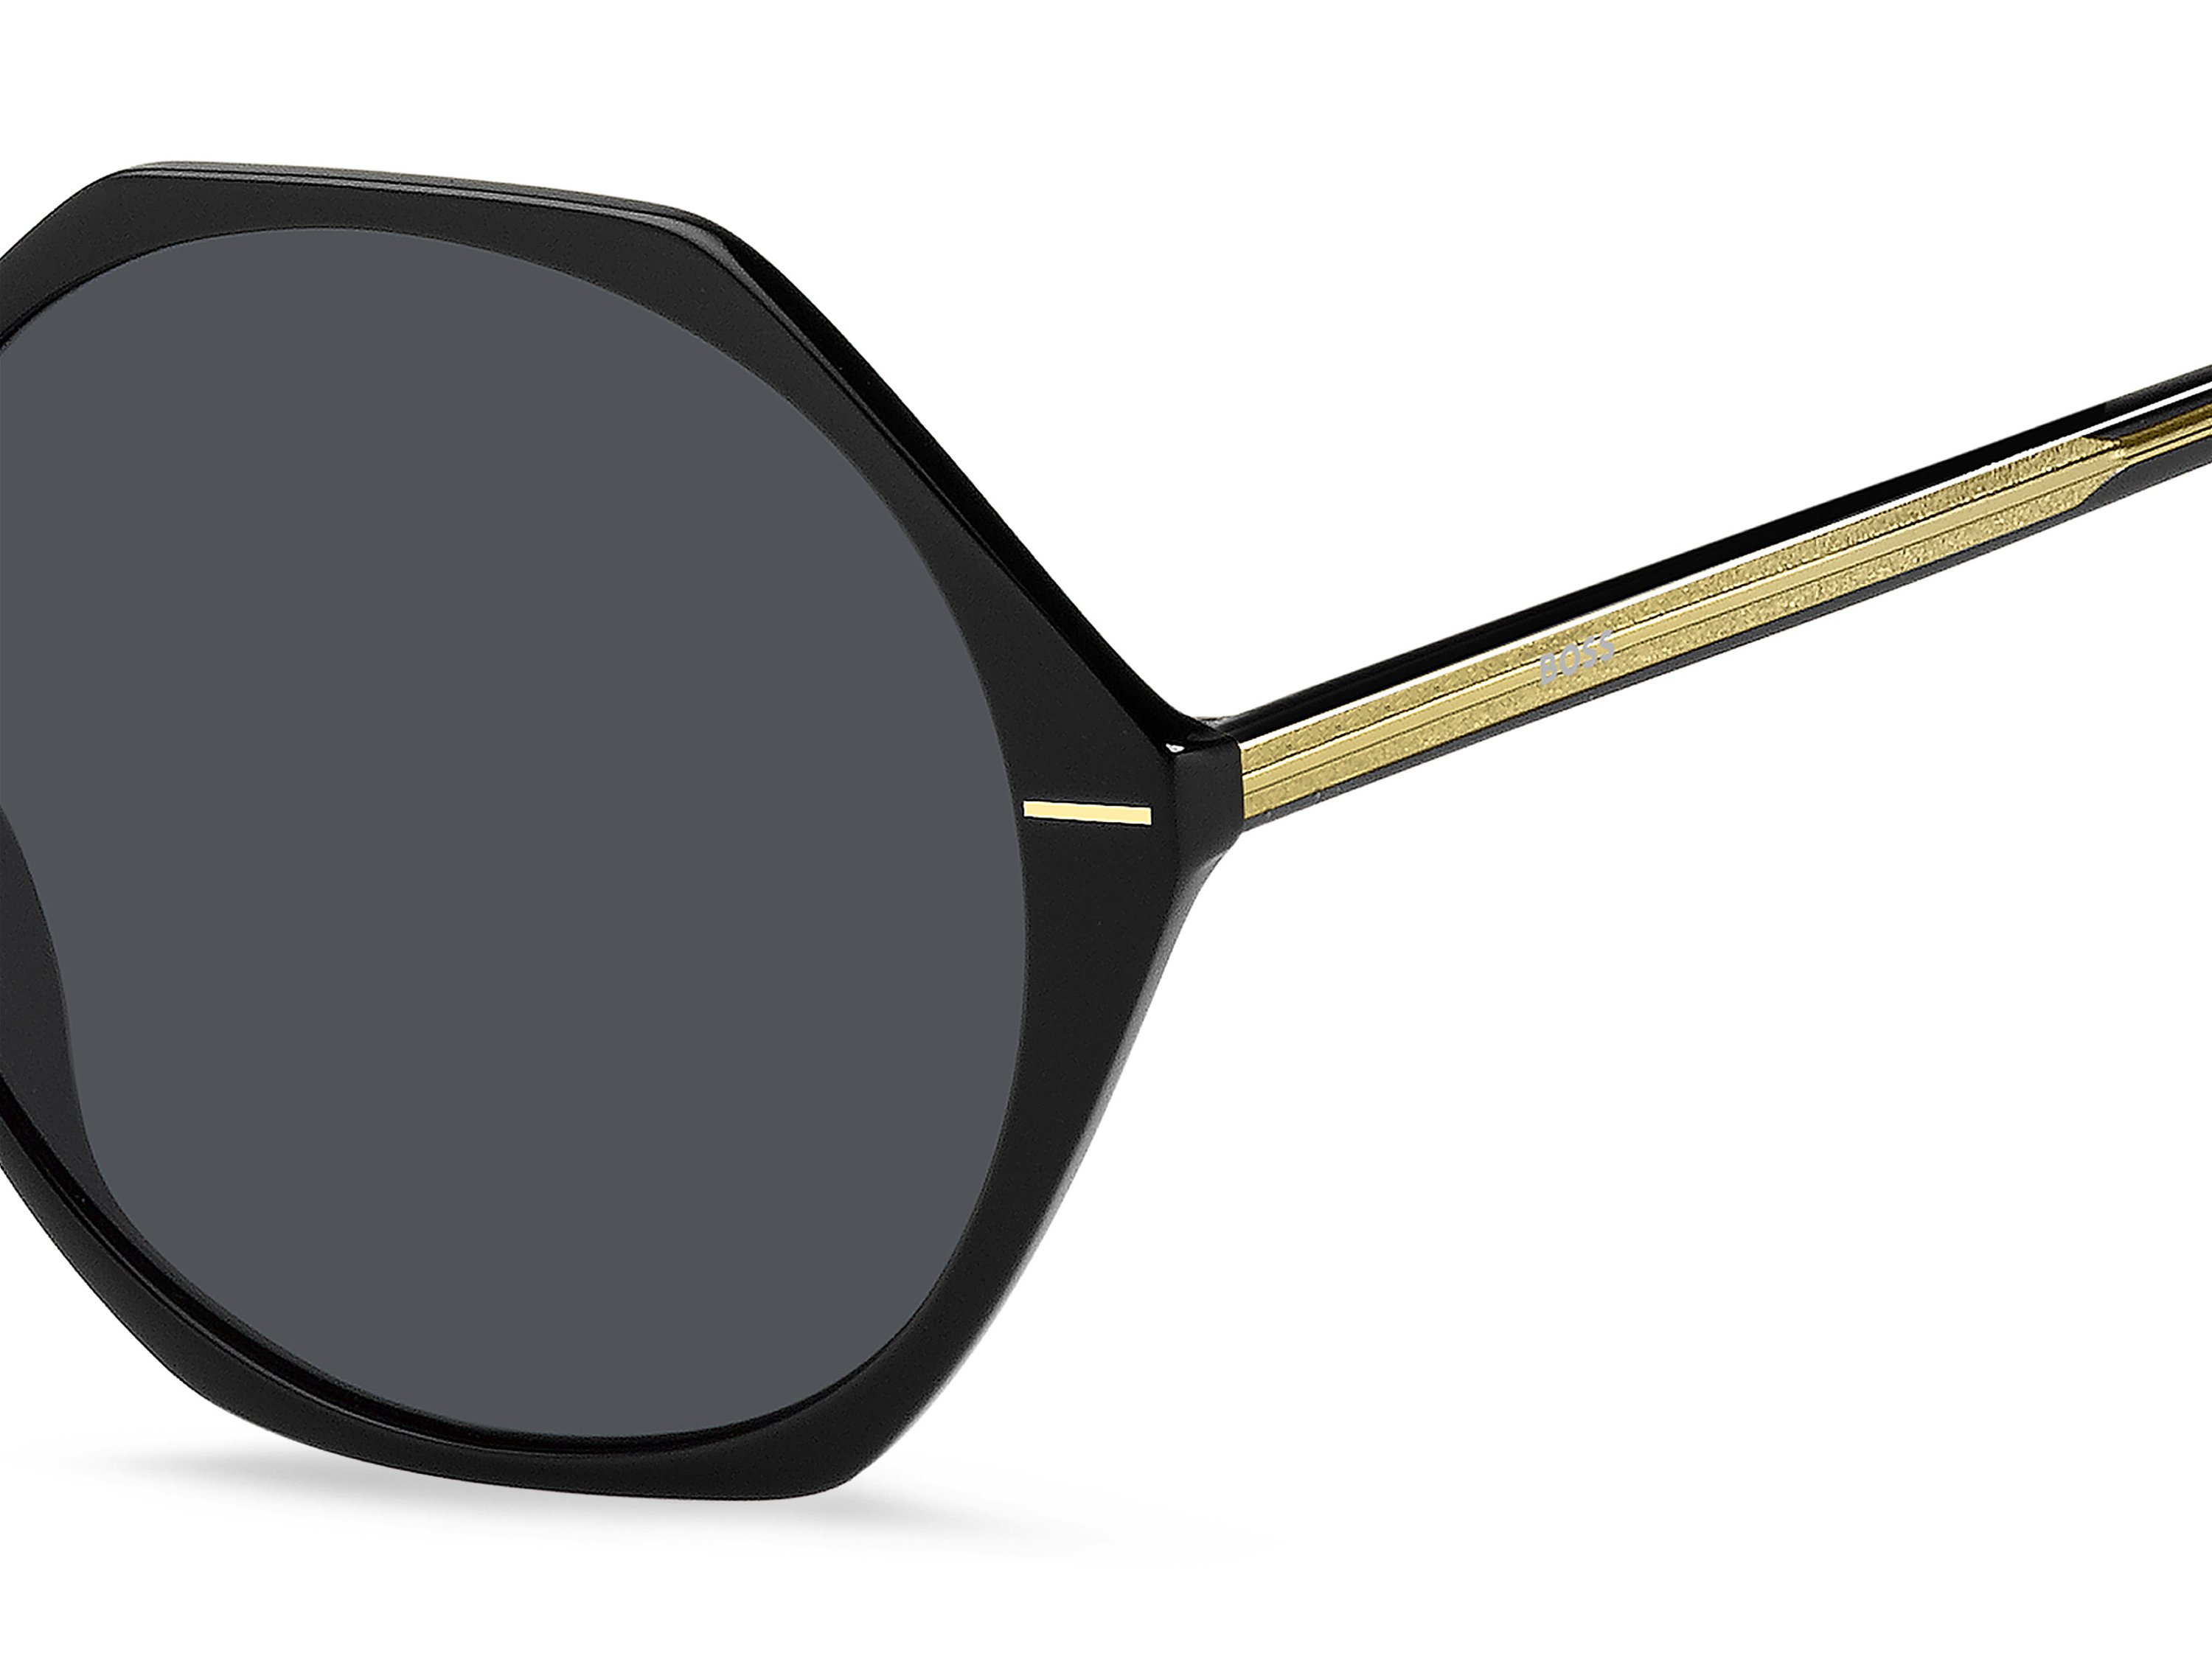 Das Bild zeigt die Sonnenbrille BOSS1585S 7C von der Marke BOSS in Schwarz.